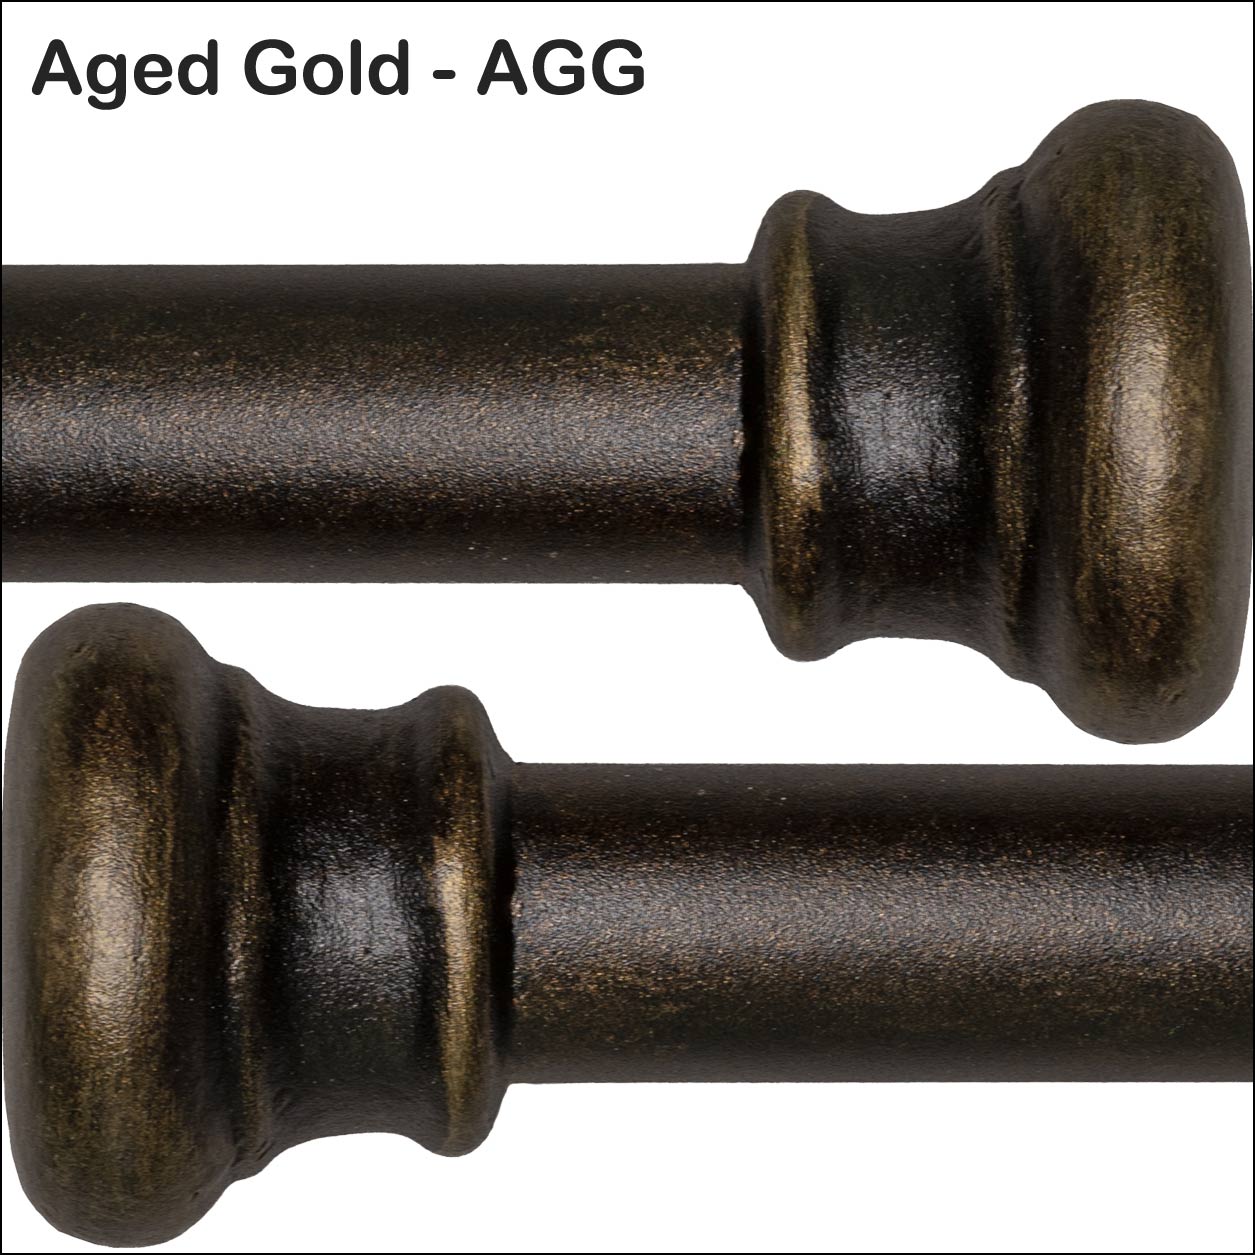 Aged Gold AGG Powder Coating Finish Wesley Allen Matriae